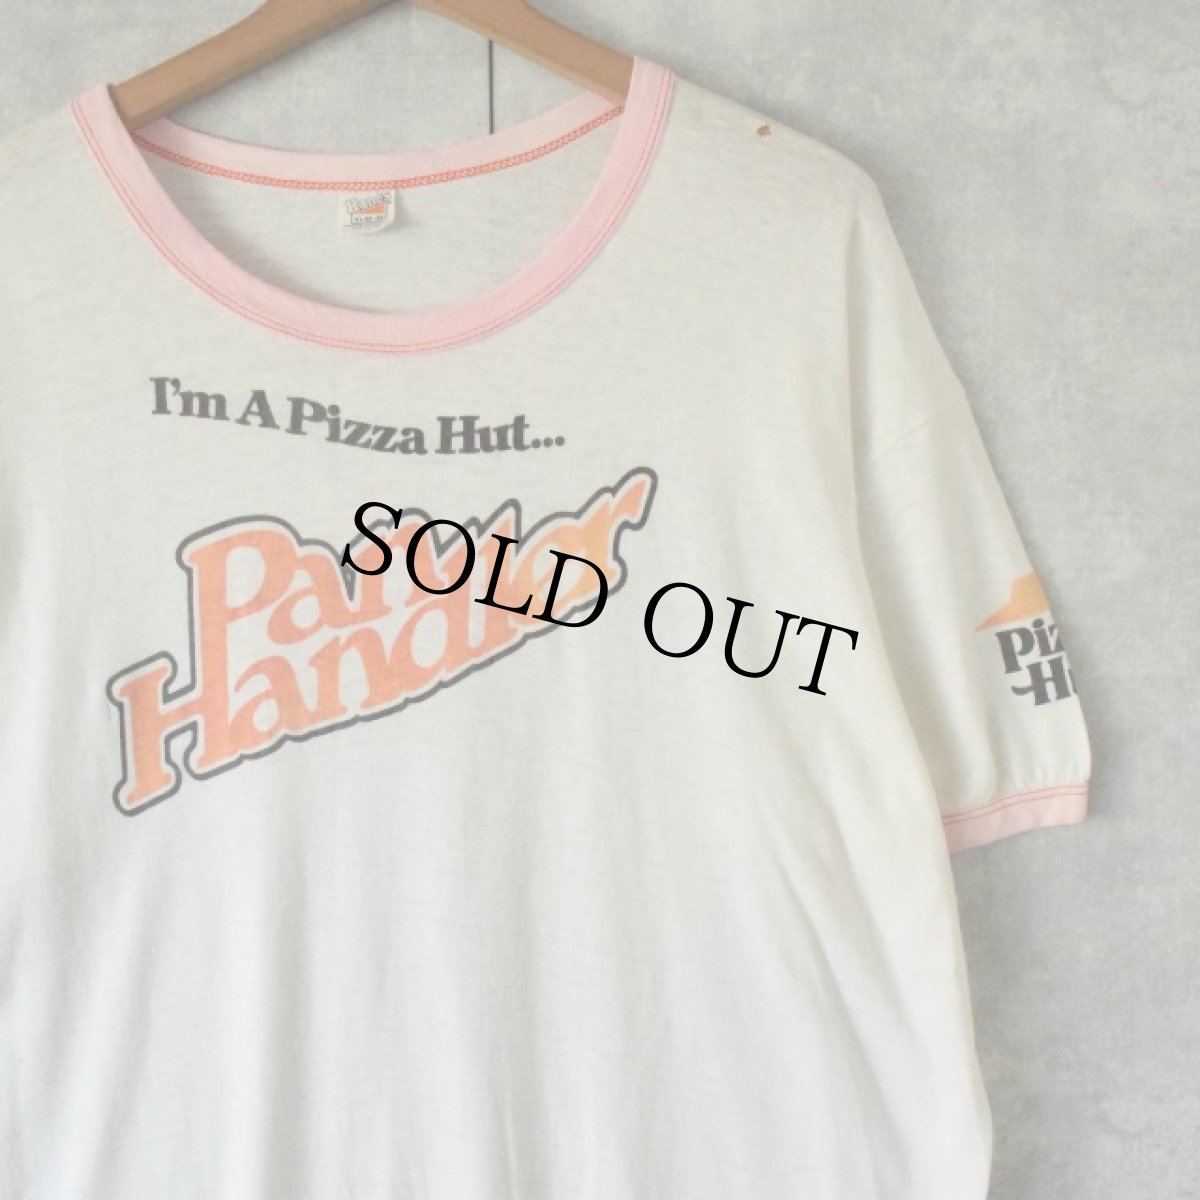 画像1: 70's Pizza-Hut USA製 ロゴプリントリンガーTシャツ XL (1)